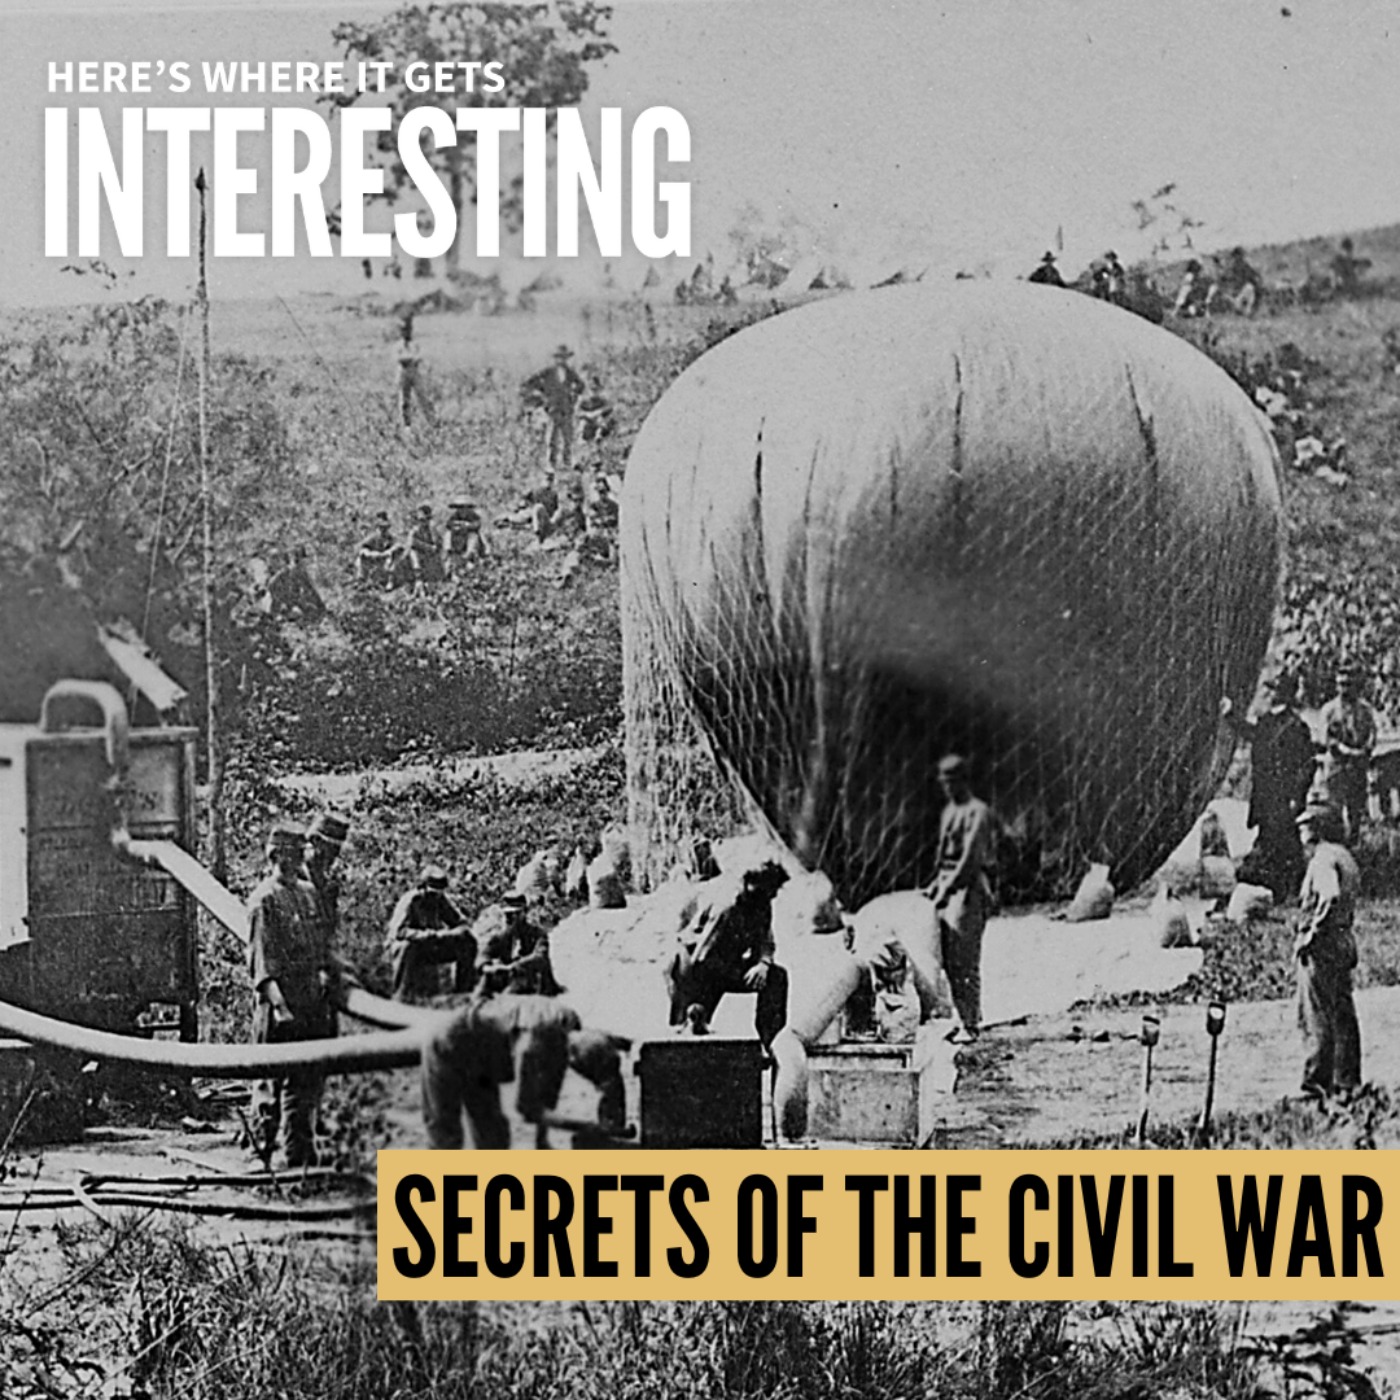 Secrets of the Civil War: Propaganda in Tune